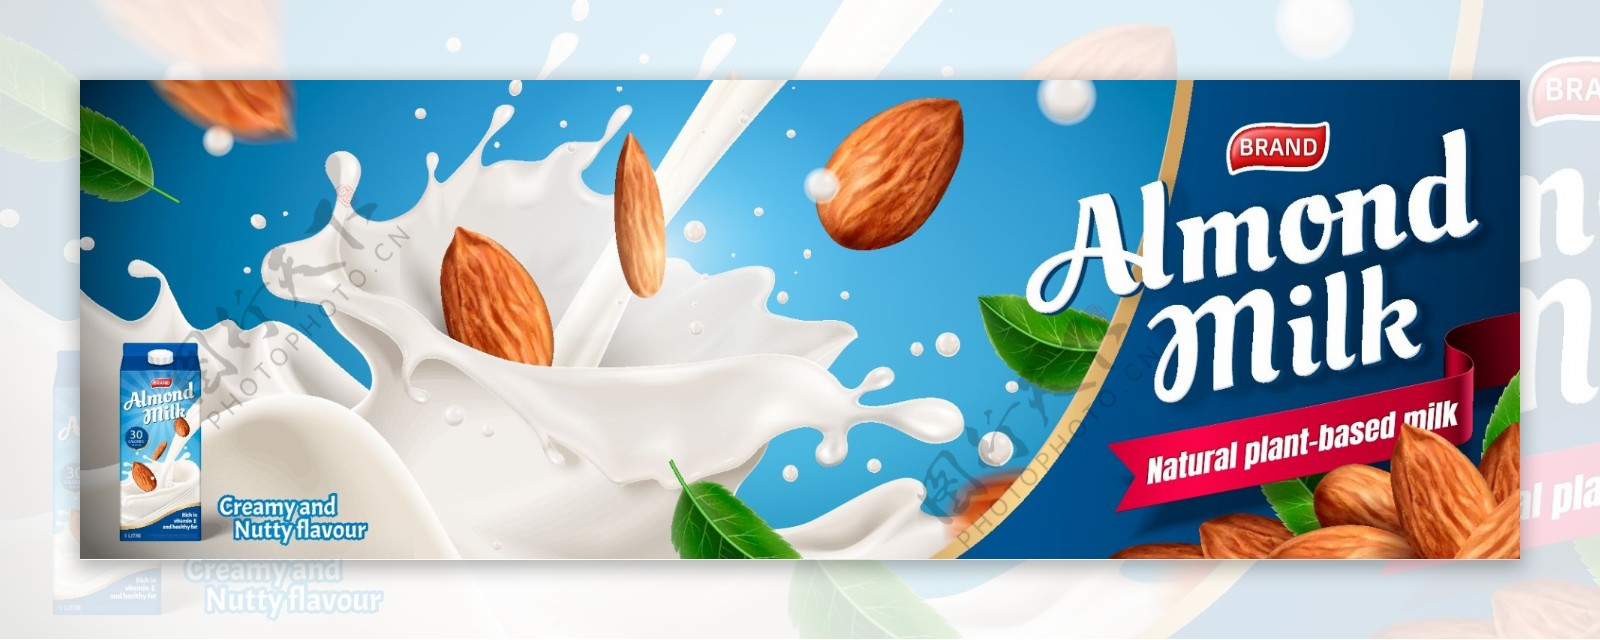 牛奶海报设计酸奶坚果图片